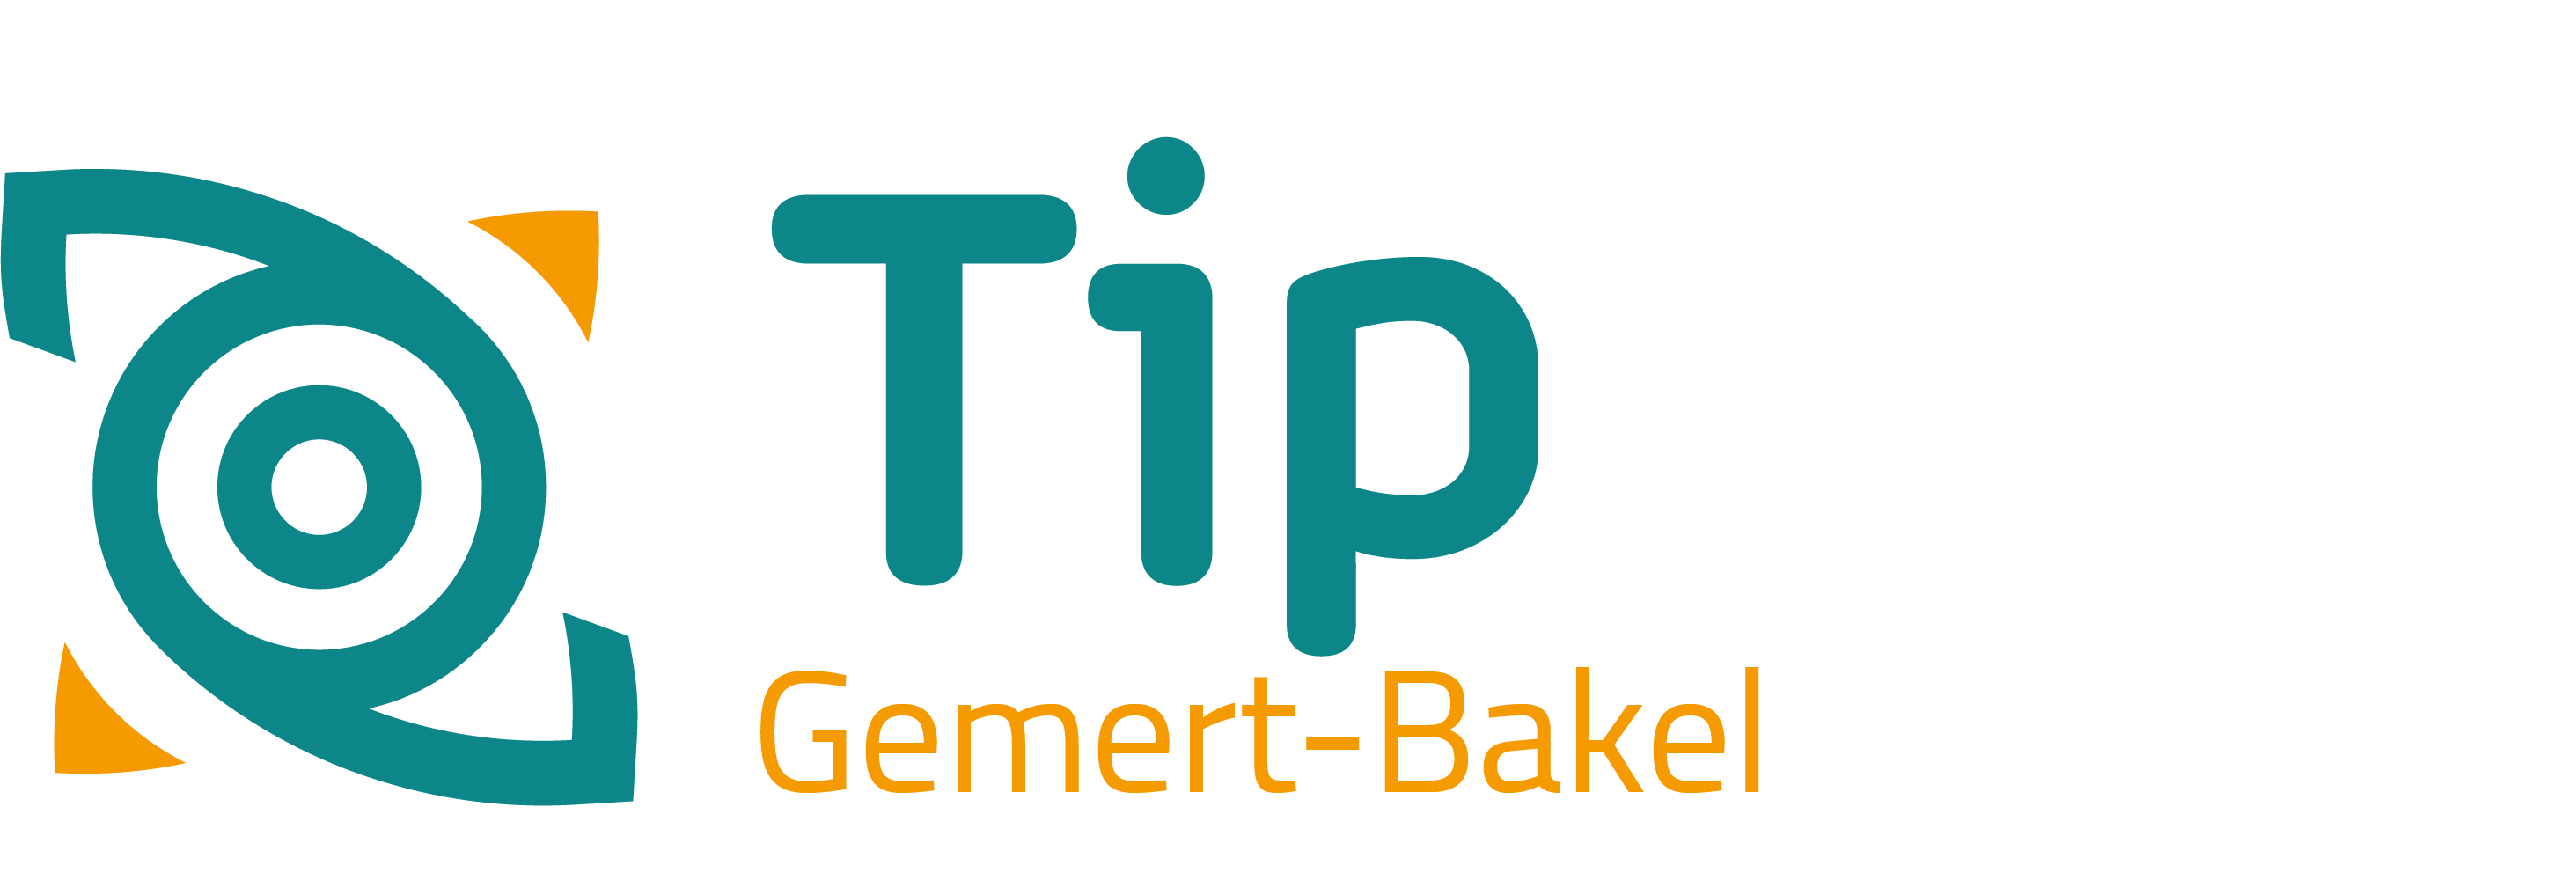 TipGemert-Bakel